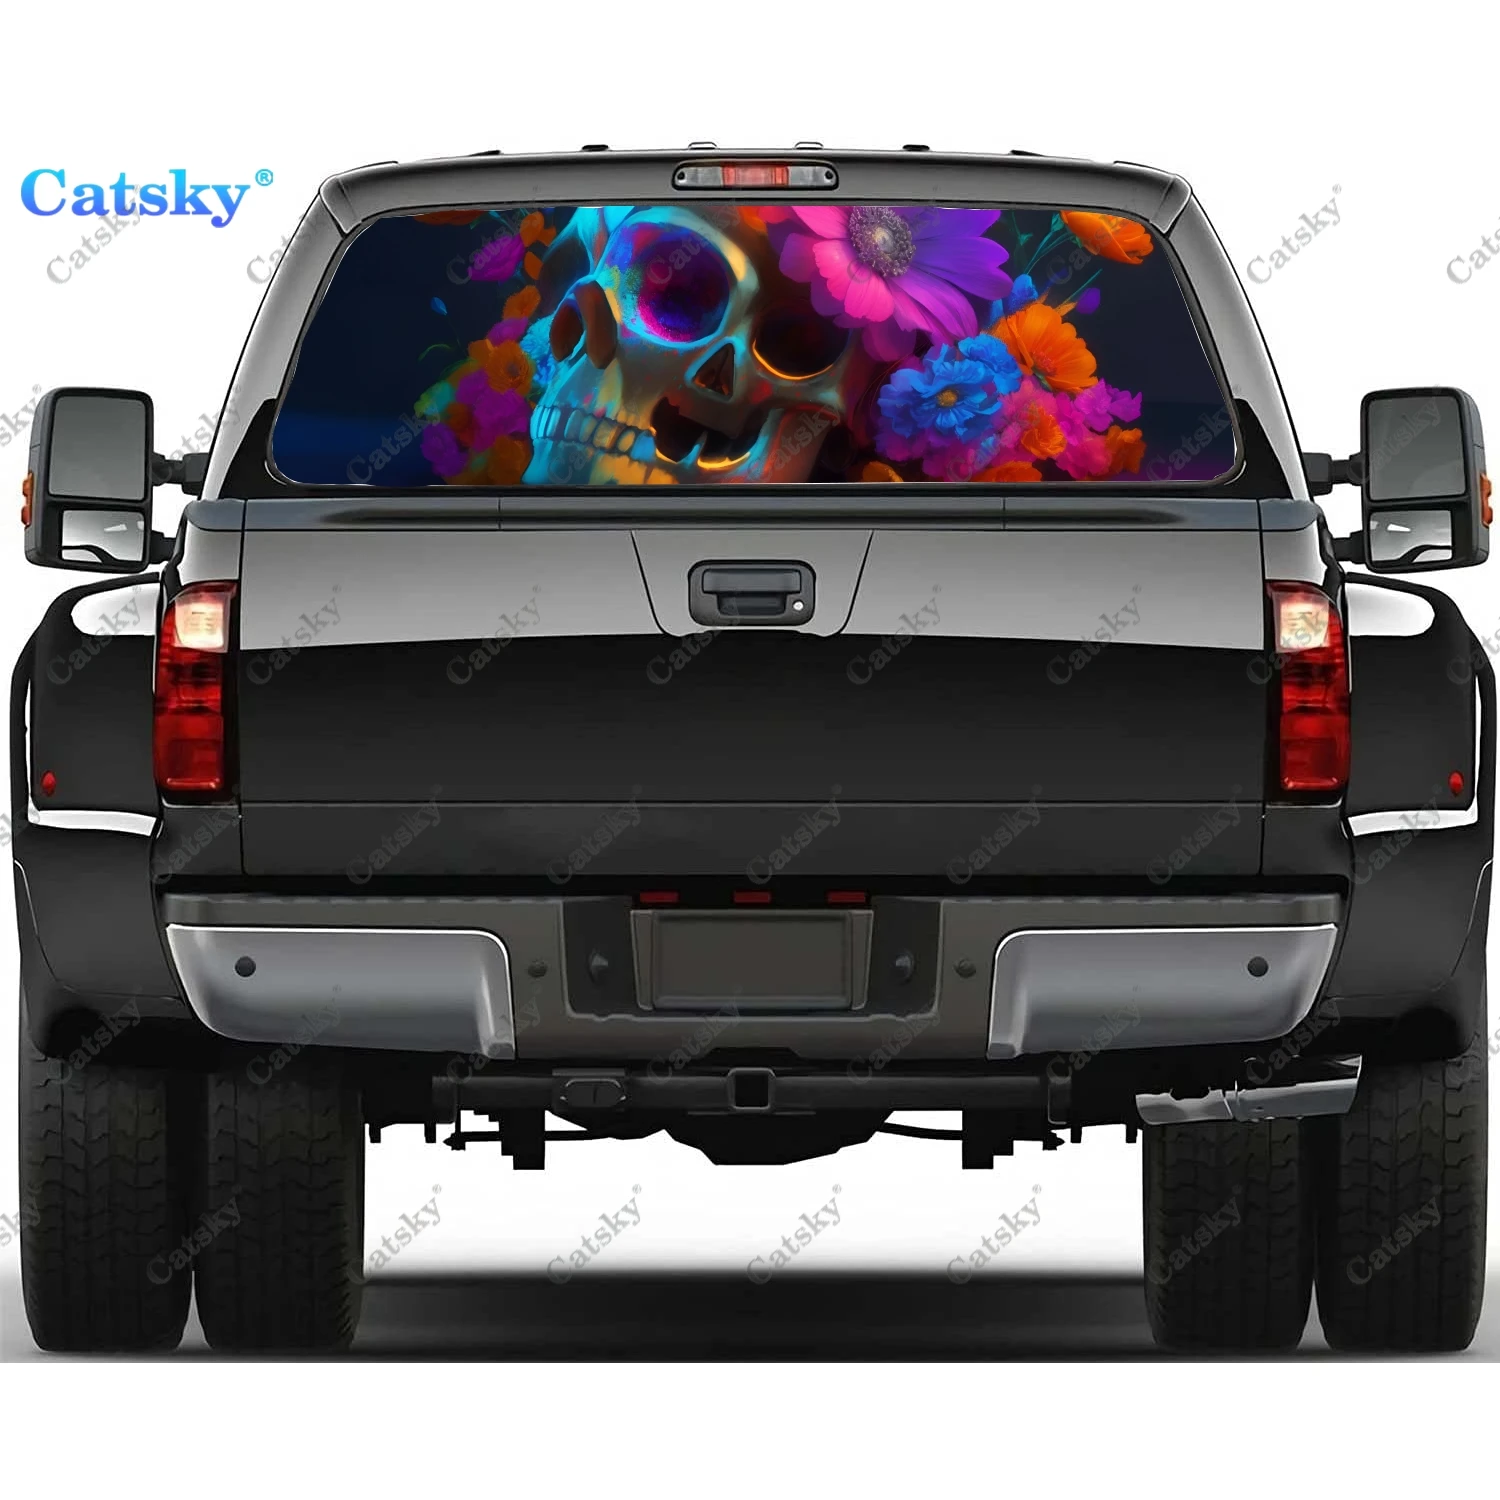 

Пользовательский цветочный принт черепа наклейка на заднее стекло автомобиля Наклейка на заднее стекло грузовика универсальная перфорированная виниловая графика